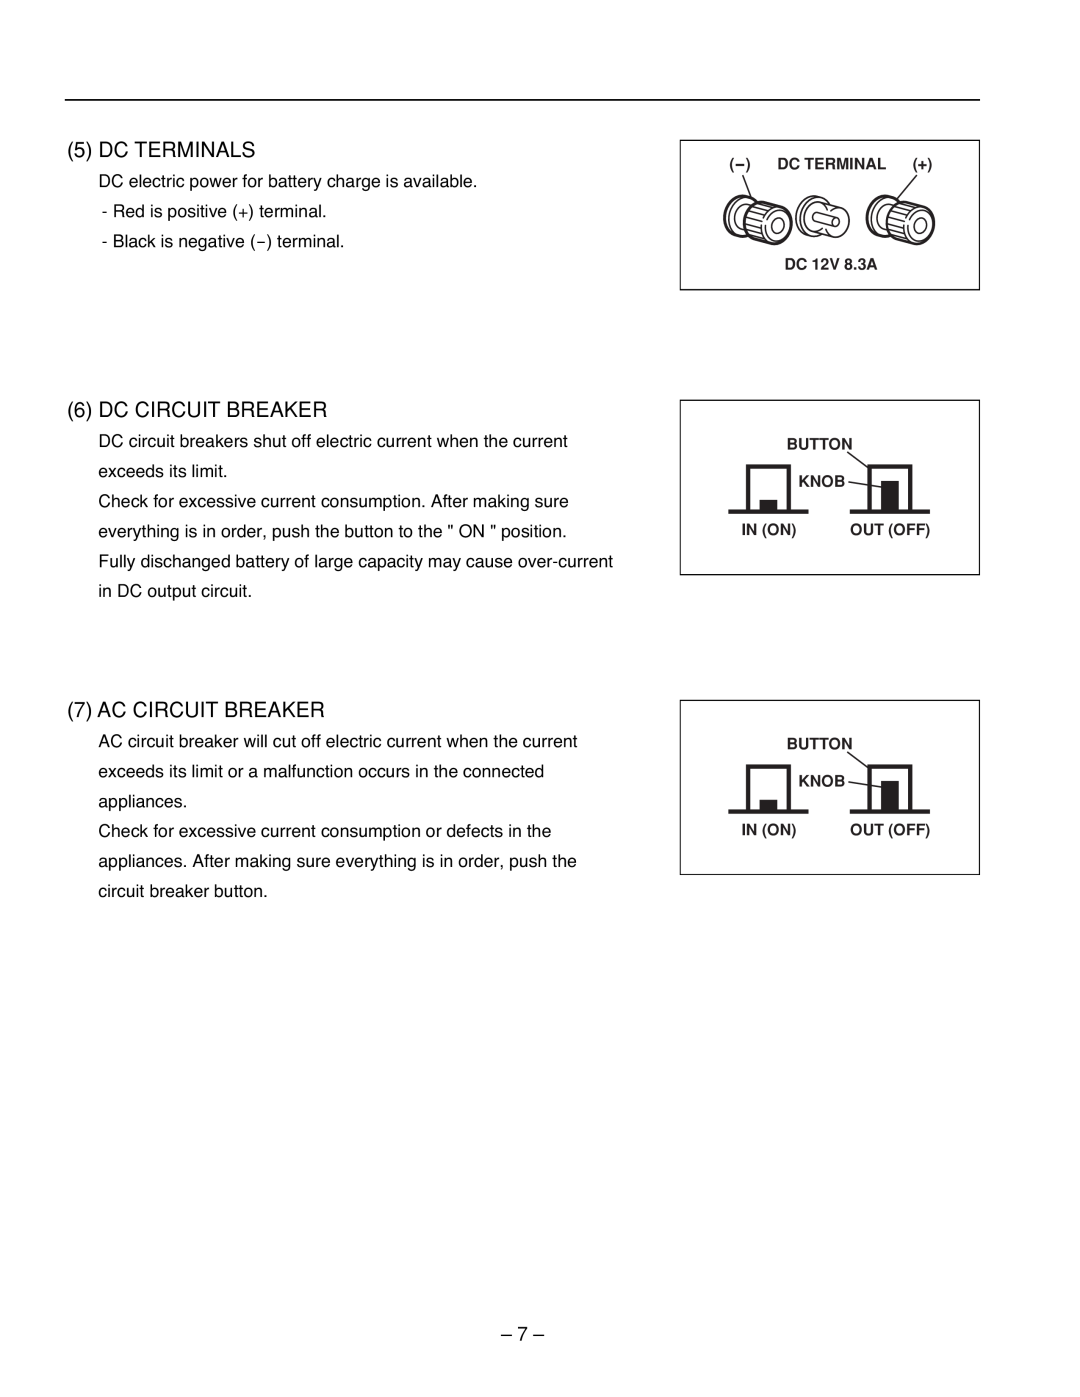 Subaru R1100 service manual Dc Terminals, Dc Circuit Breaker, Ac Circuit Breaker 